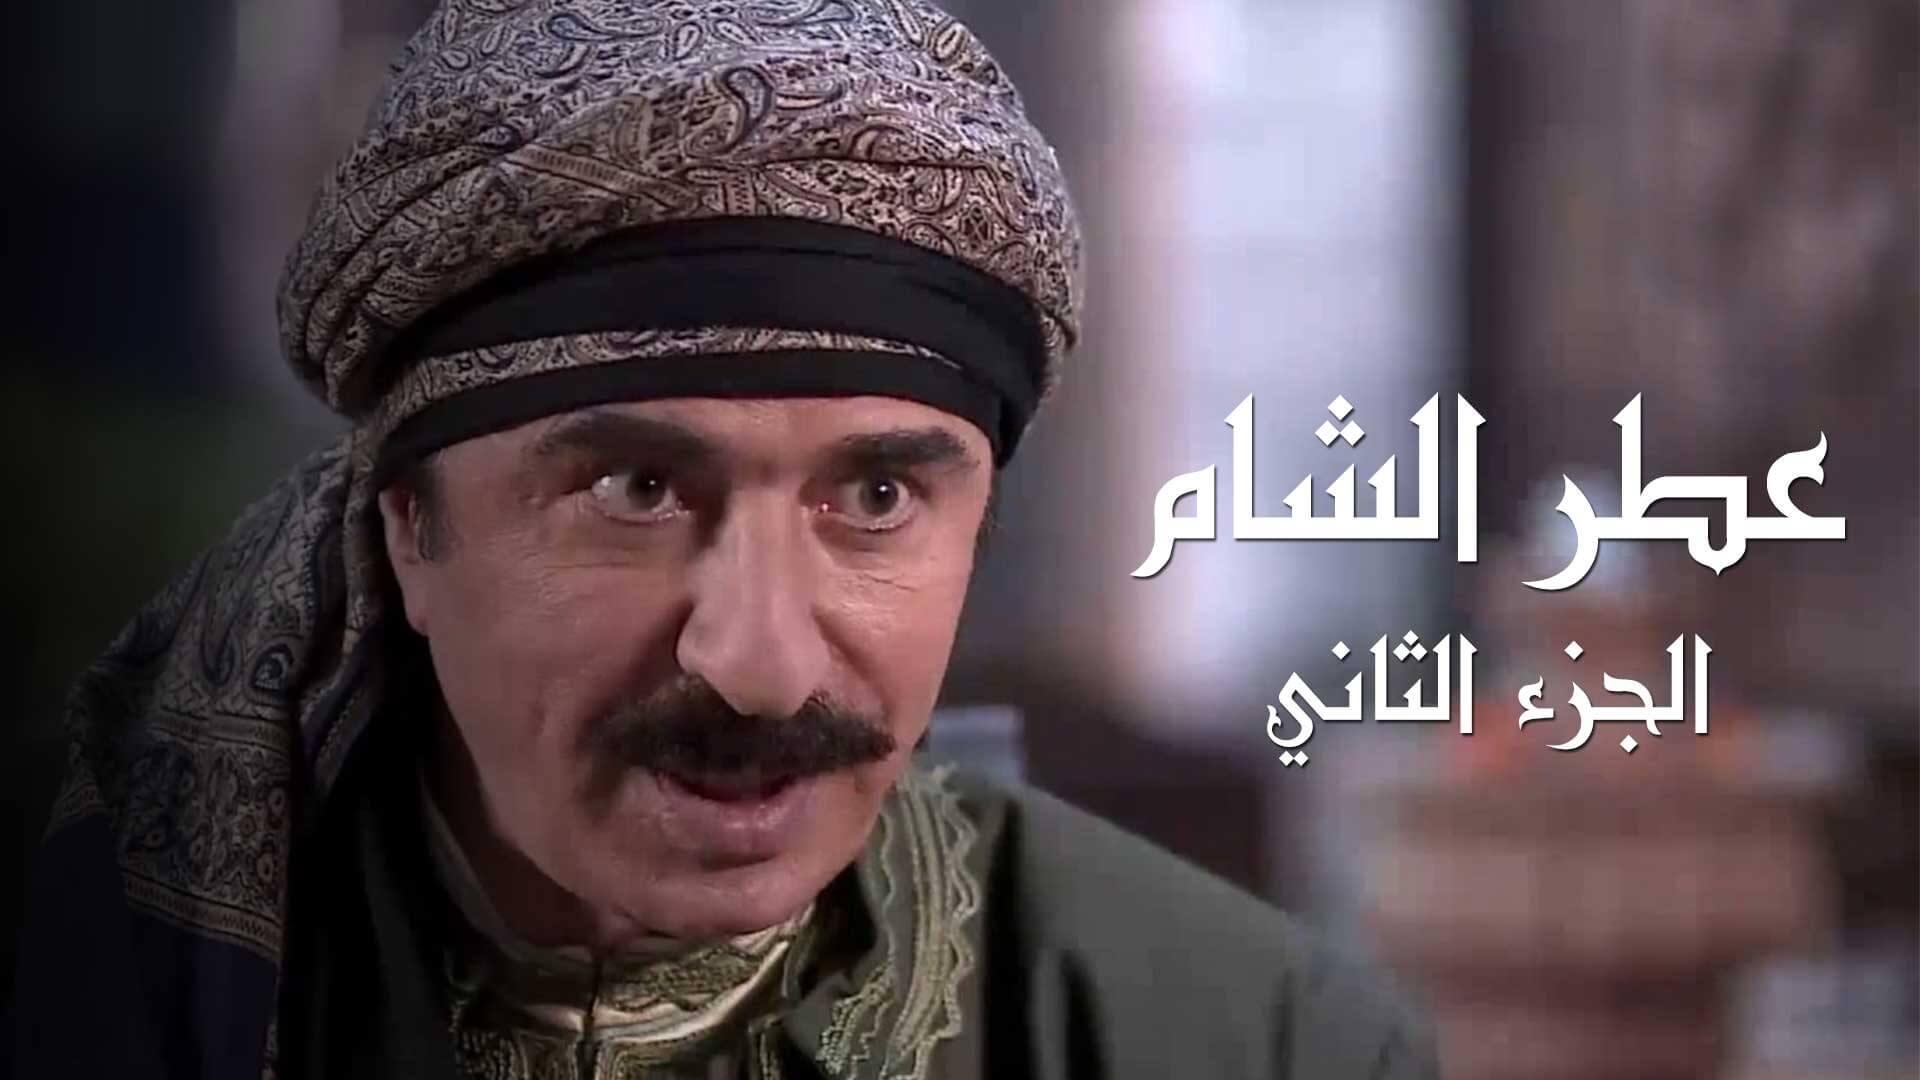 مسلسل عطر الشام الجزء 2 الحلقة 1 الأولى